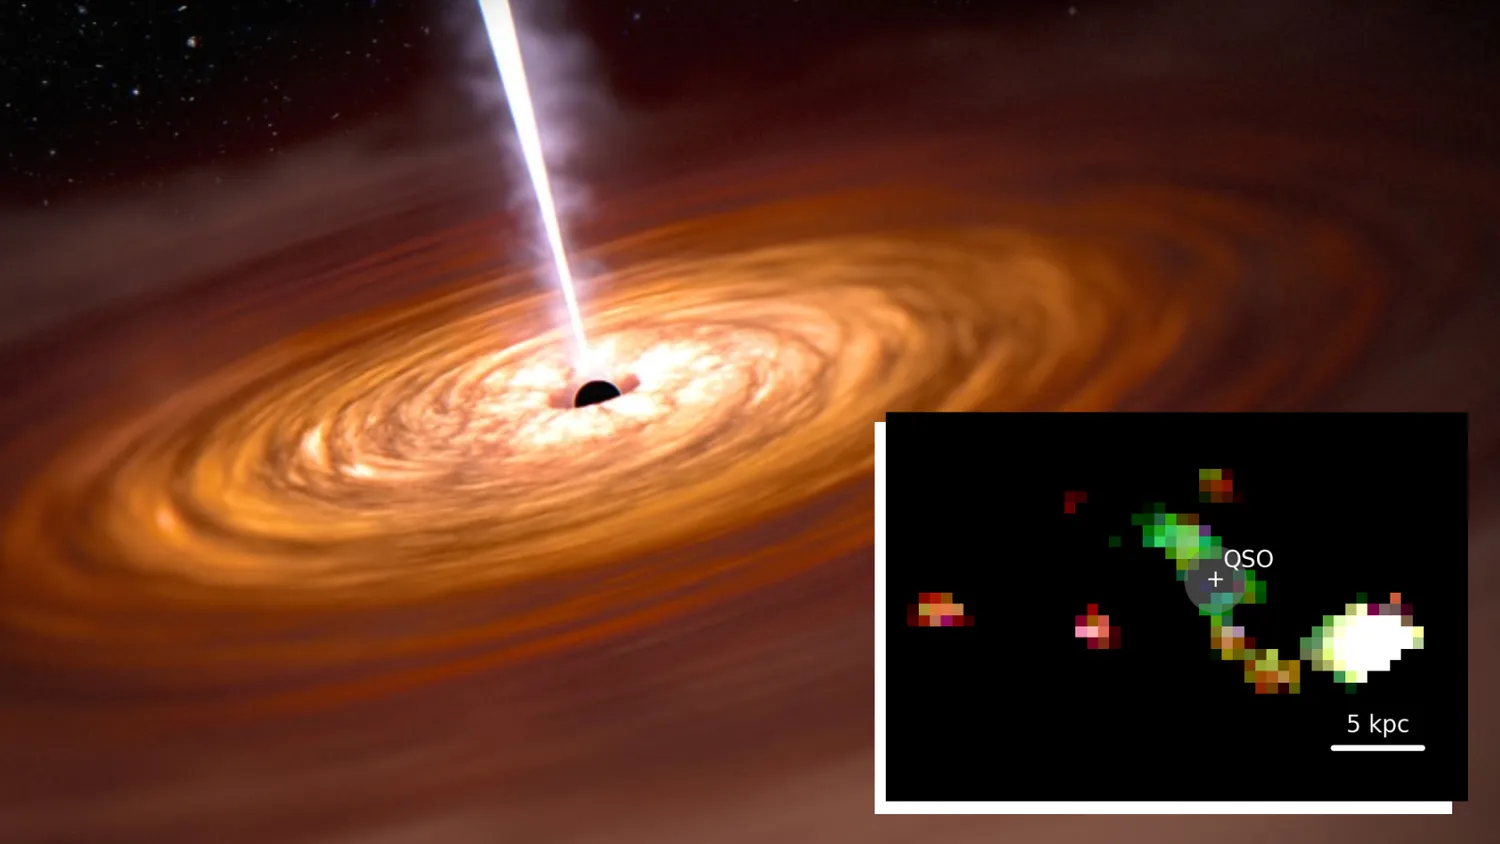 Mehr über den Artikel erfahren James Webb Space Telescope sieht ein uraltes schwarzes Loch mit kollidierenden Galaxien tanzen